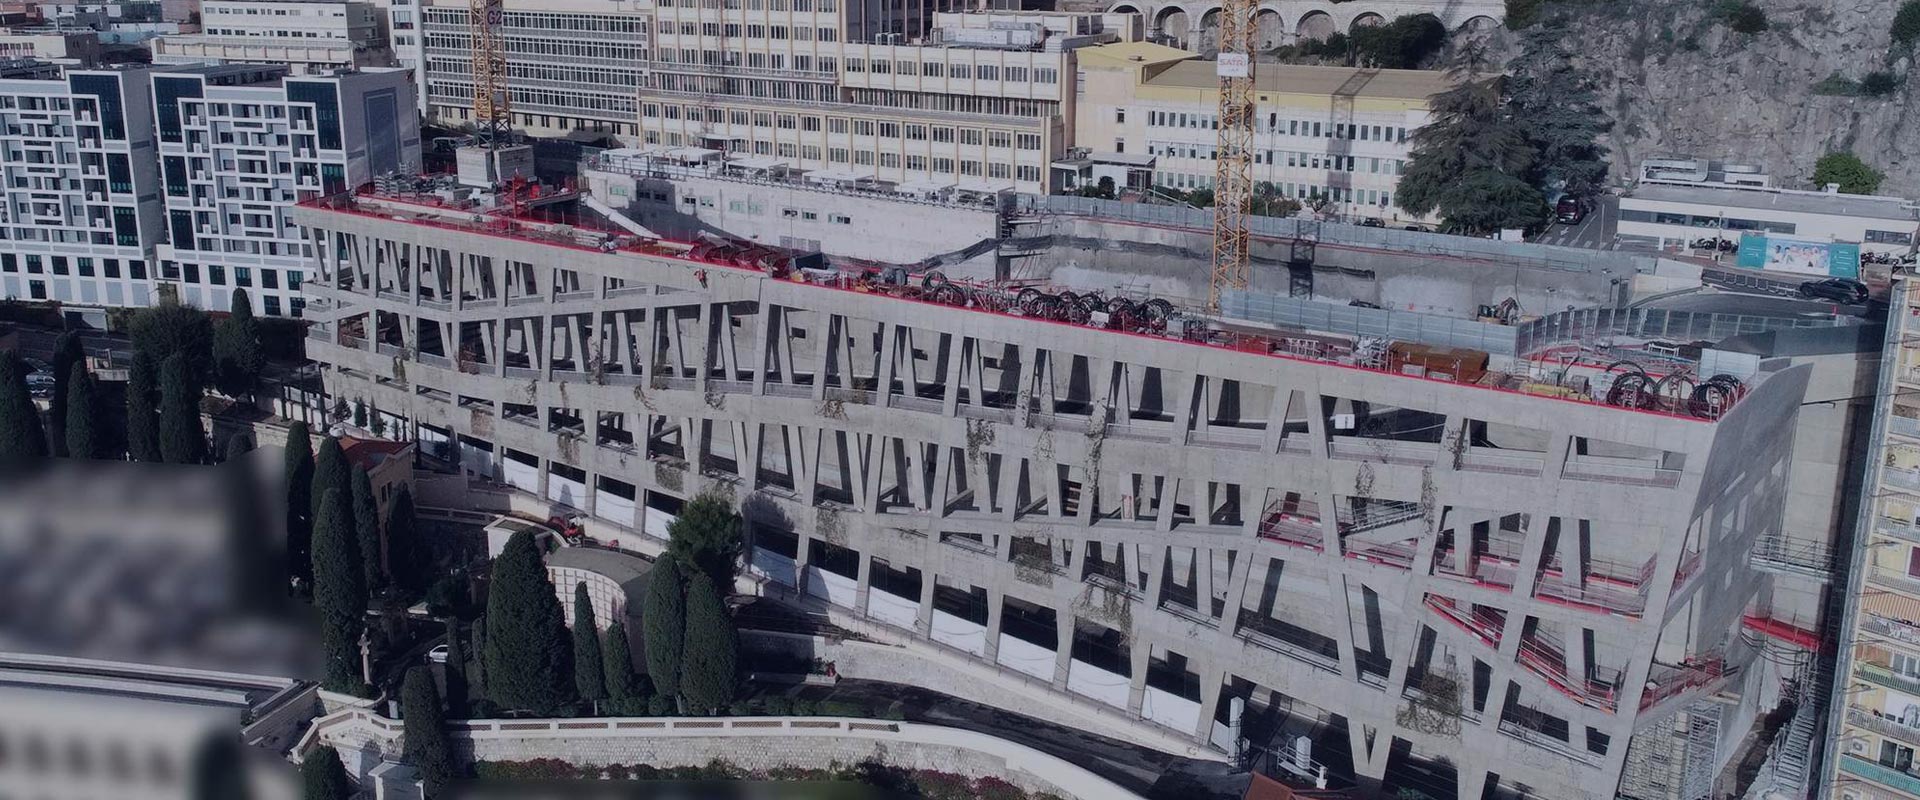 Hôpital Grâce de Monaco